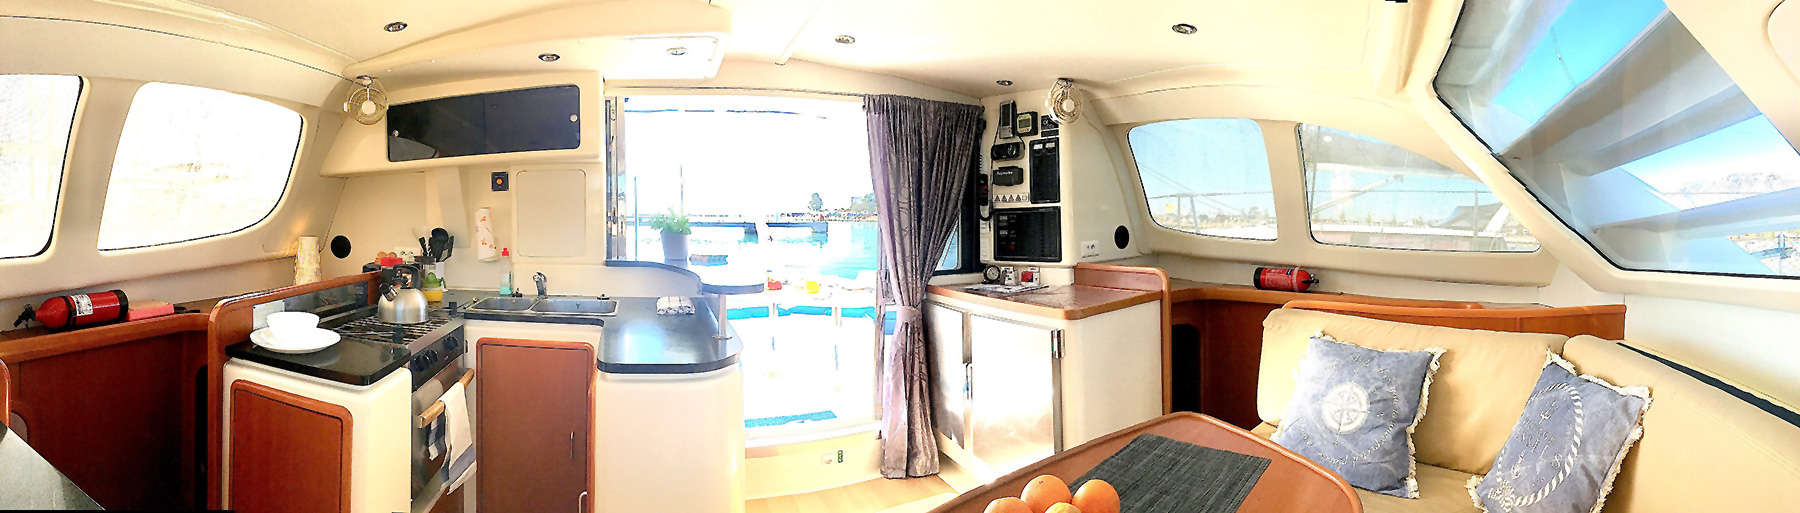 Catamaran Ibiza, salon interieur